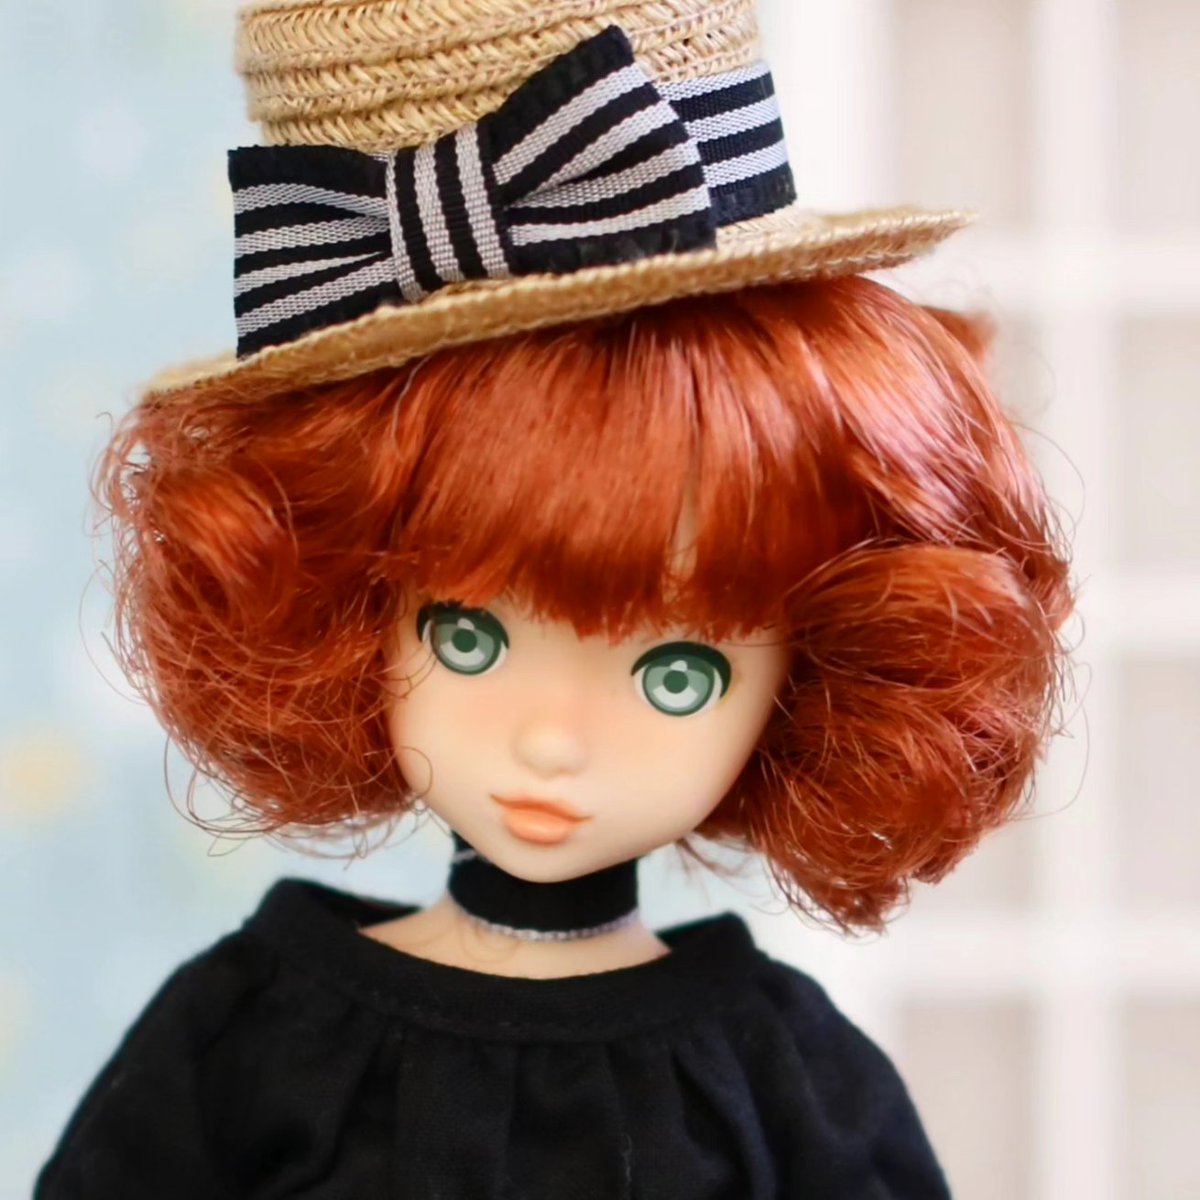 24ssちゃん、@etlan_for_dollさまのお帽子が最高に似合う(,,>᎑<,,)　可愛い‼

#ruruko